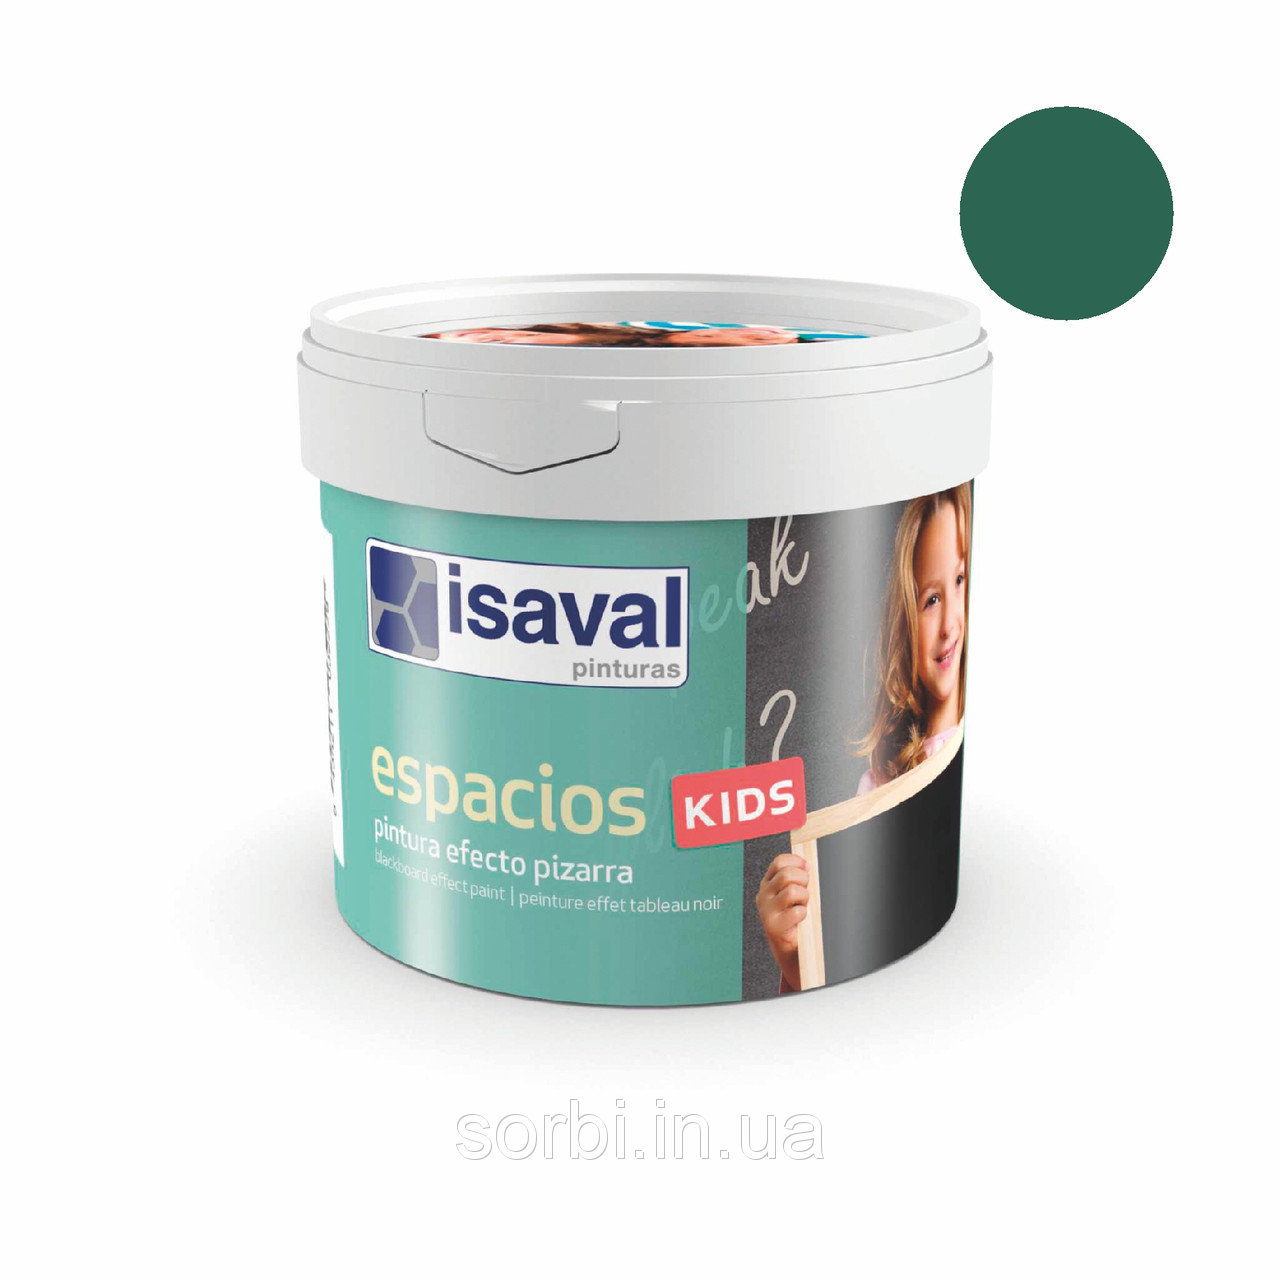 Фарба для шкільної дошки зелена - Espacios Kids 0,5л isaval